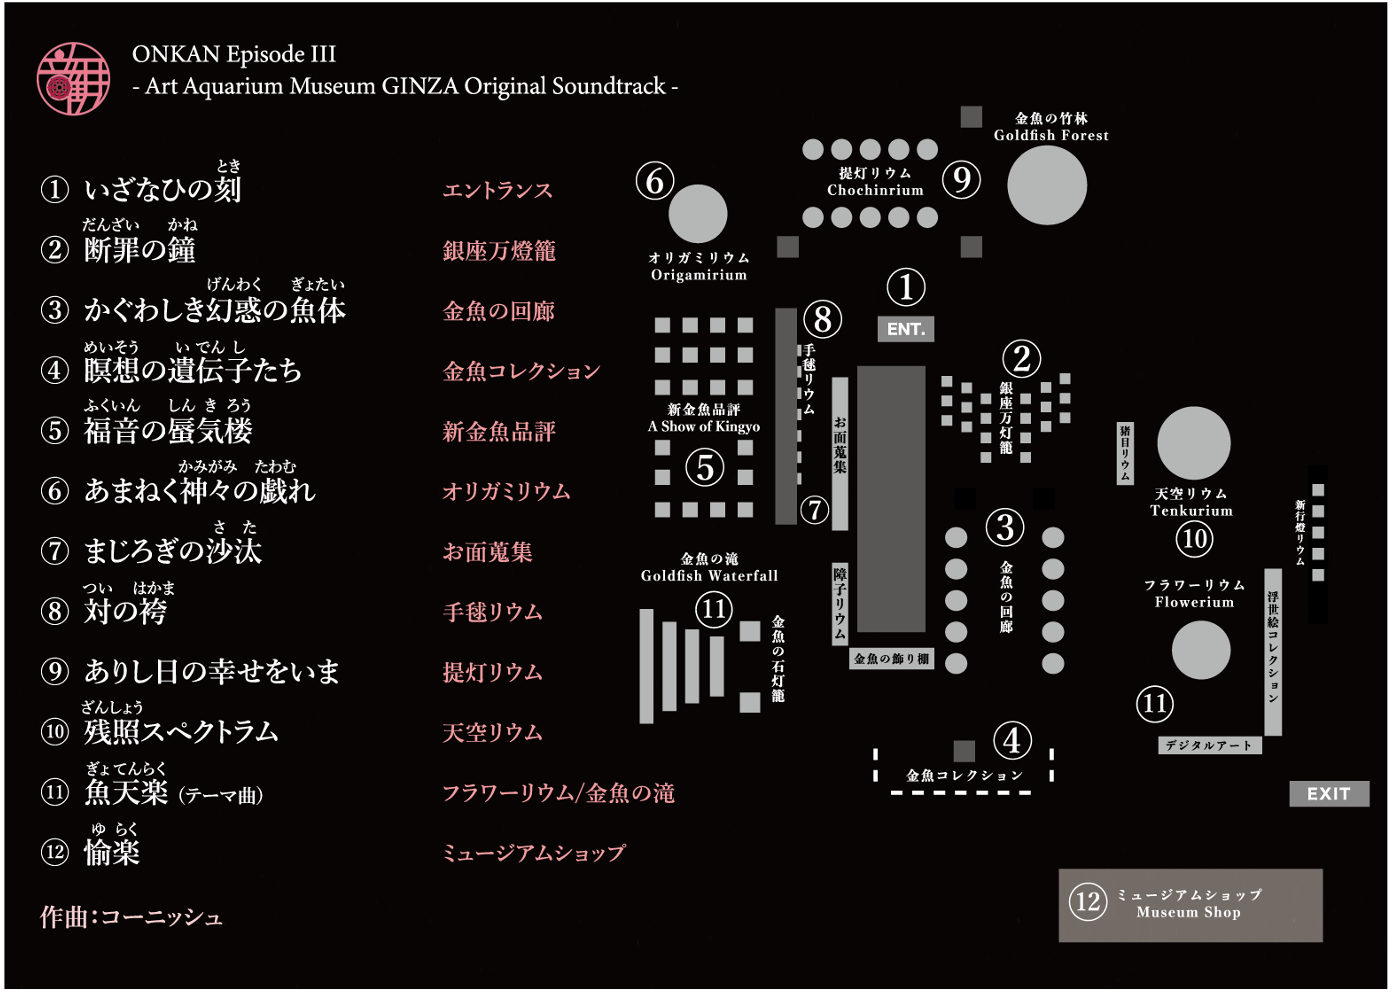 アートアクアリウム美術館 GINZA 館内BGMオリジナルサウンドトラックCD